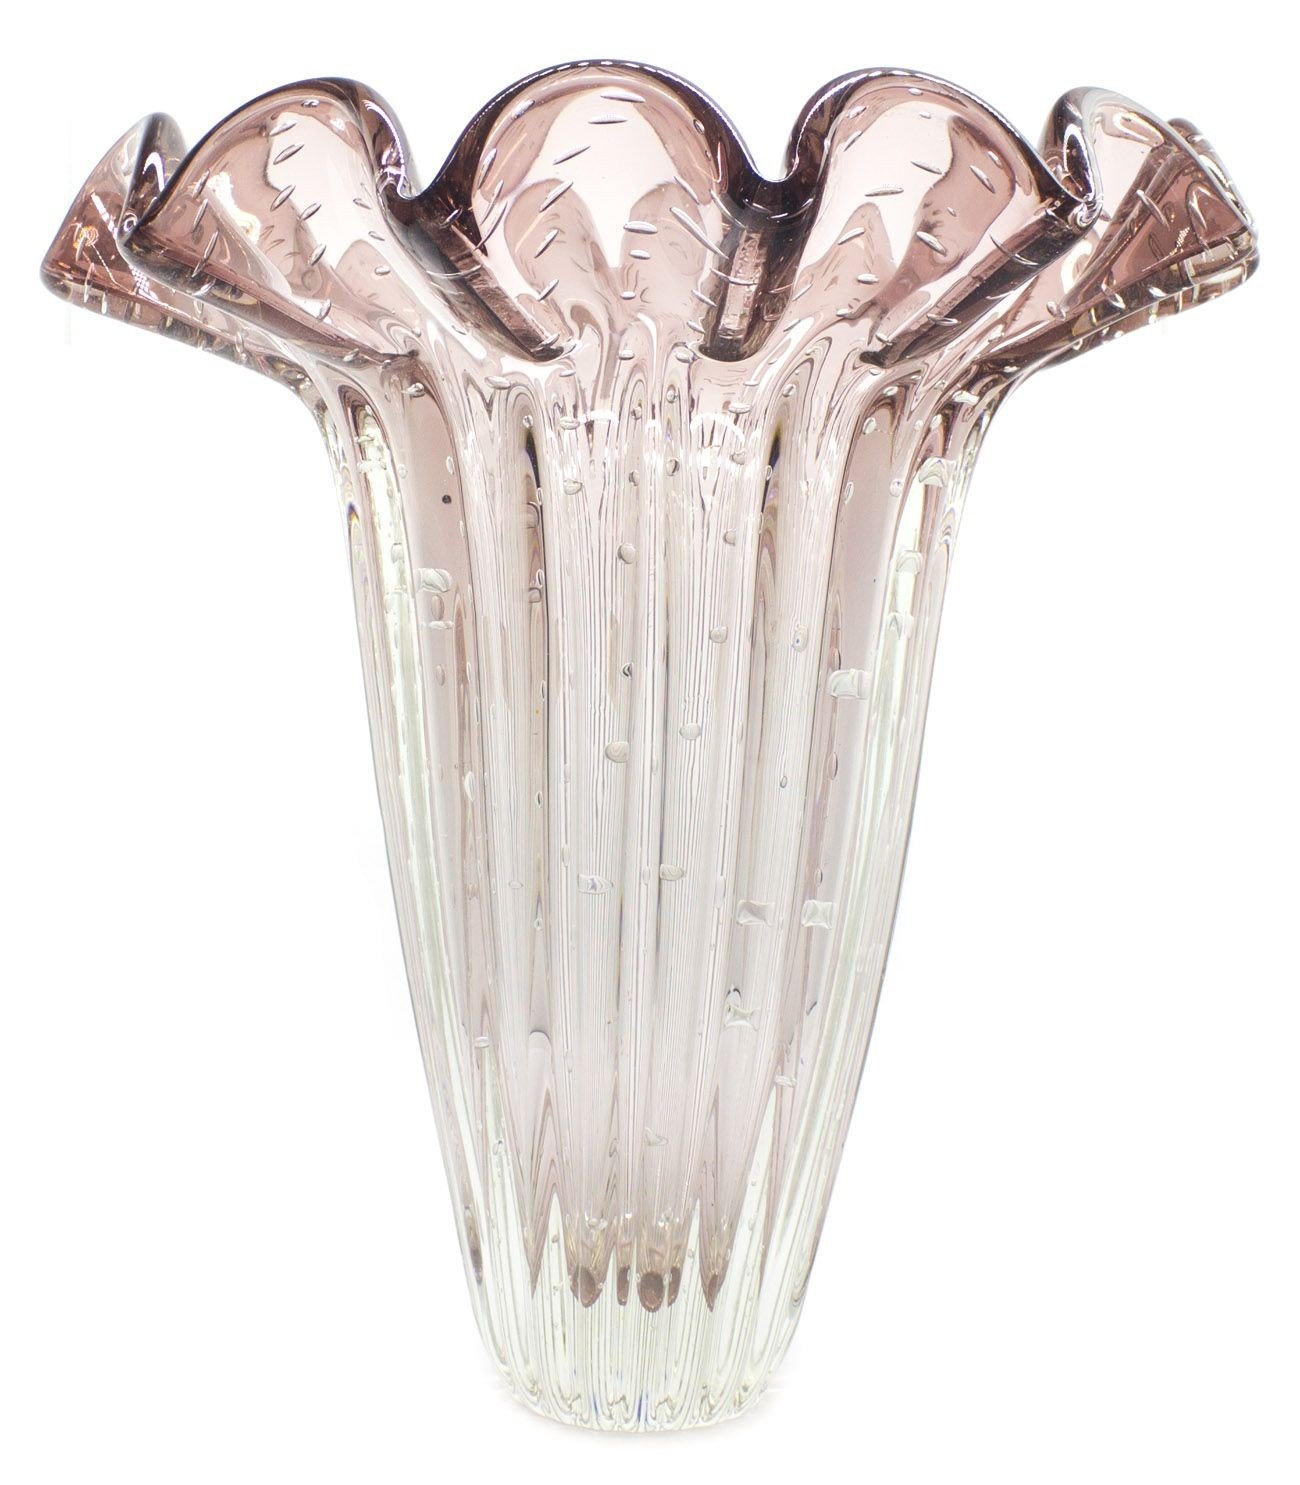 vaso de cristal murano island cor new rubi 20876018 1 20181210150705